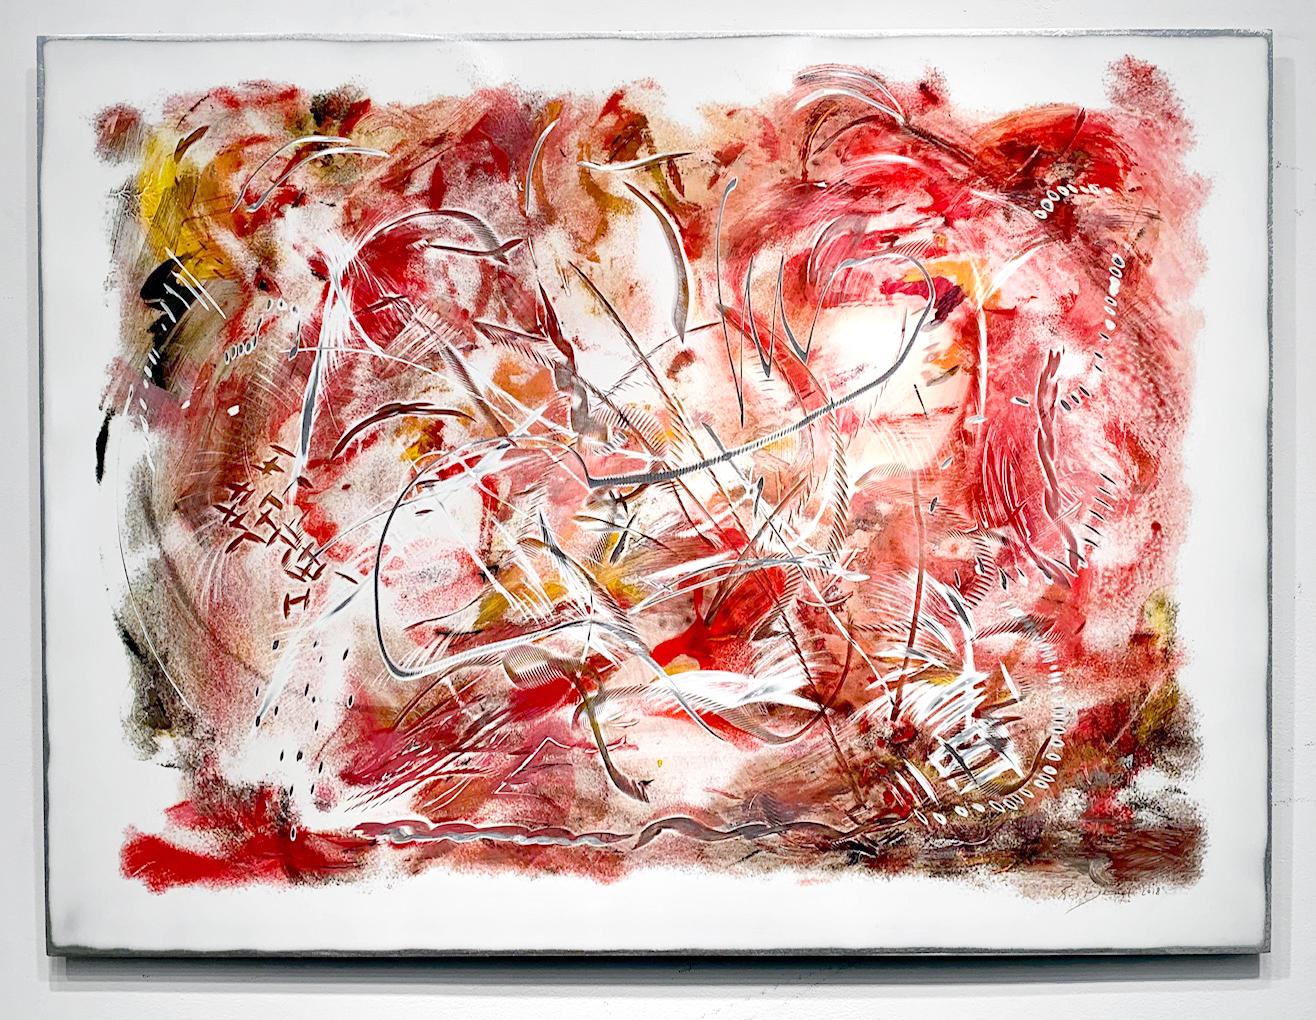 Abstraktes Gemälde "Rhabarber" von Kevin Barrett
Acryl und Epoxid auf Aluminiumplatte

Barrett ist bekannt für seine einzigartigen, rhythmischen, abstrakten Skulpturen und Wandreliefs für Innen und Außen.  

Gemälde, Wandrelief-Skulptur,